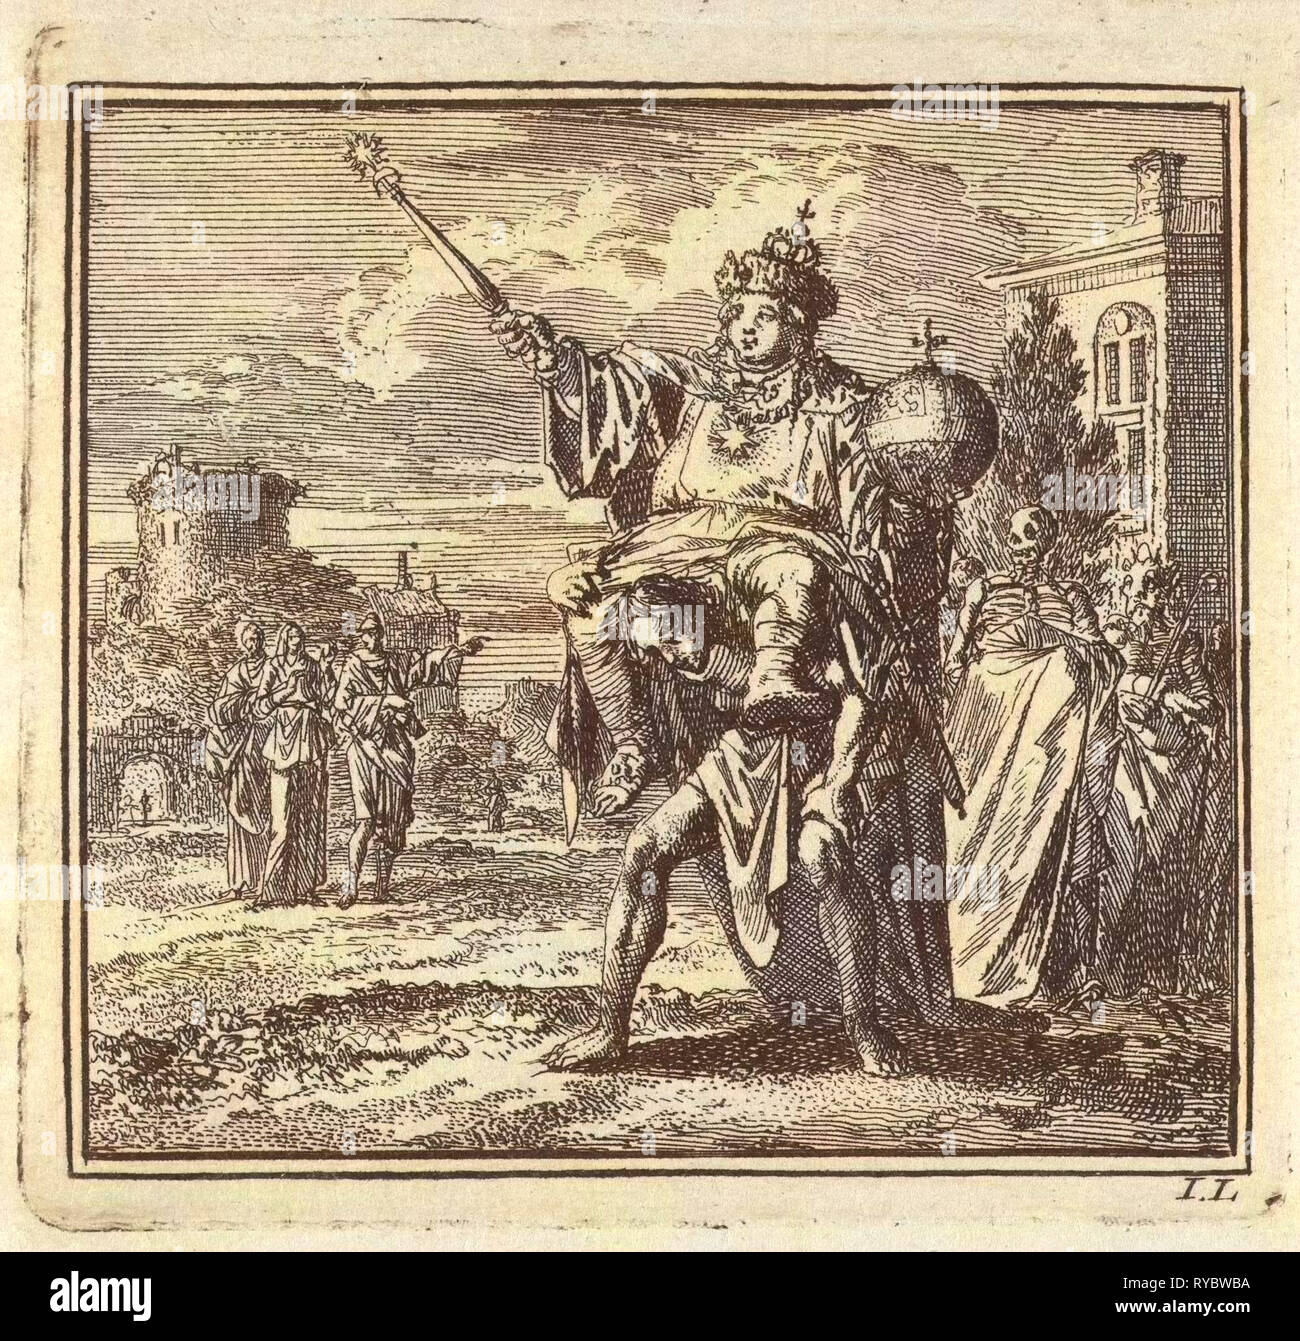 Der Mensch durch das Gewicht der Würdenträger auf seinem Rücken, dessen Mantel von Tod und Teufel durchgeführt wird belastet, Jan Luyken, wed. Pieter Arentsz, Cornelis van der Sys II, 1710 Stockfoto